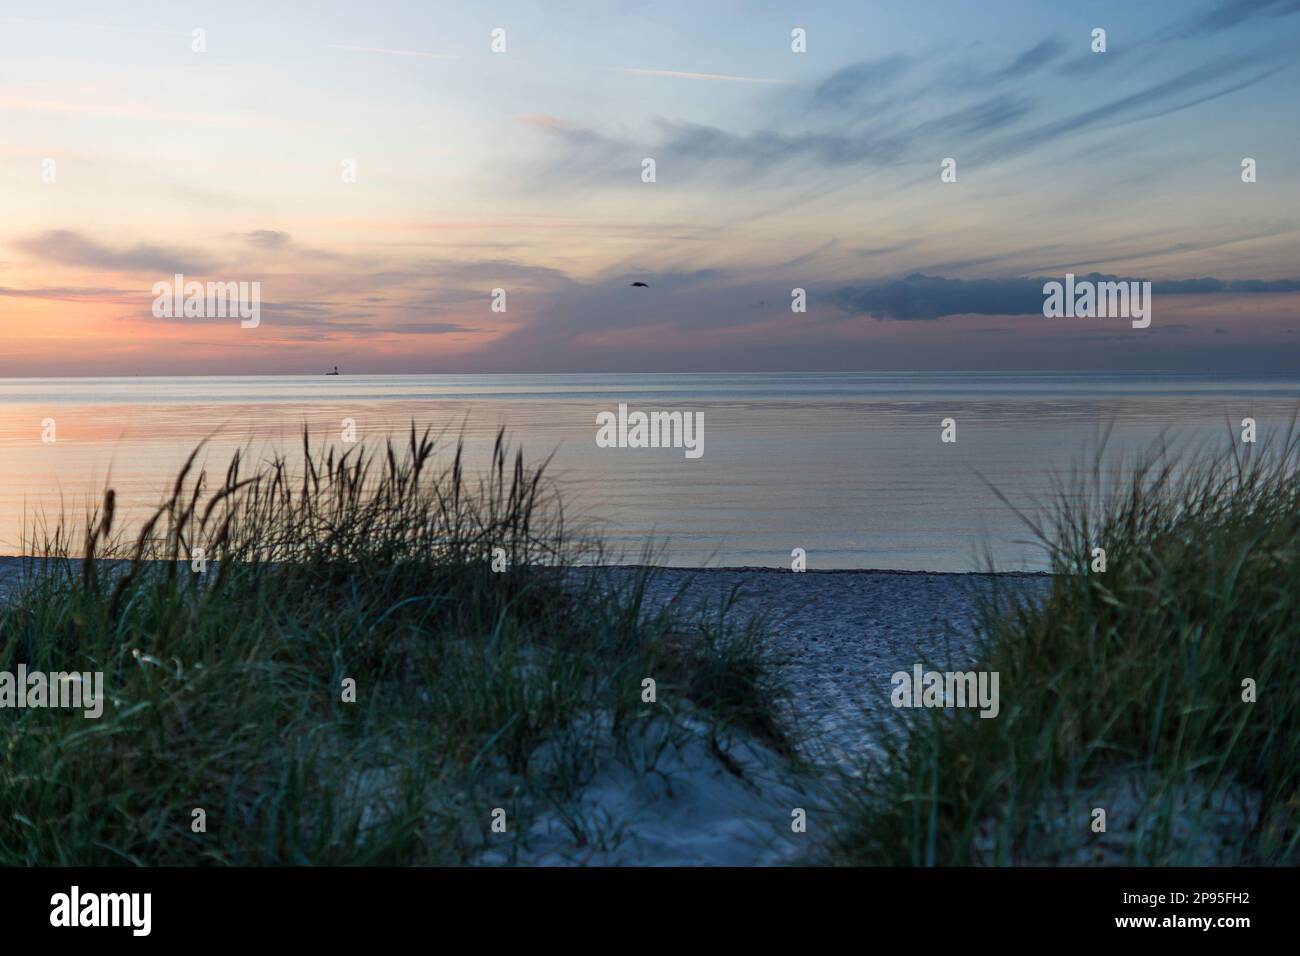 Heidkate, plage, vue sur la mer Baltique, coucher de soleil Banque D'Images